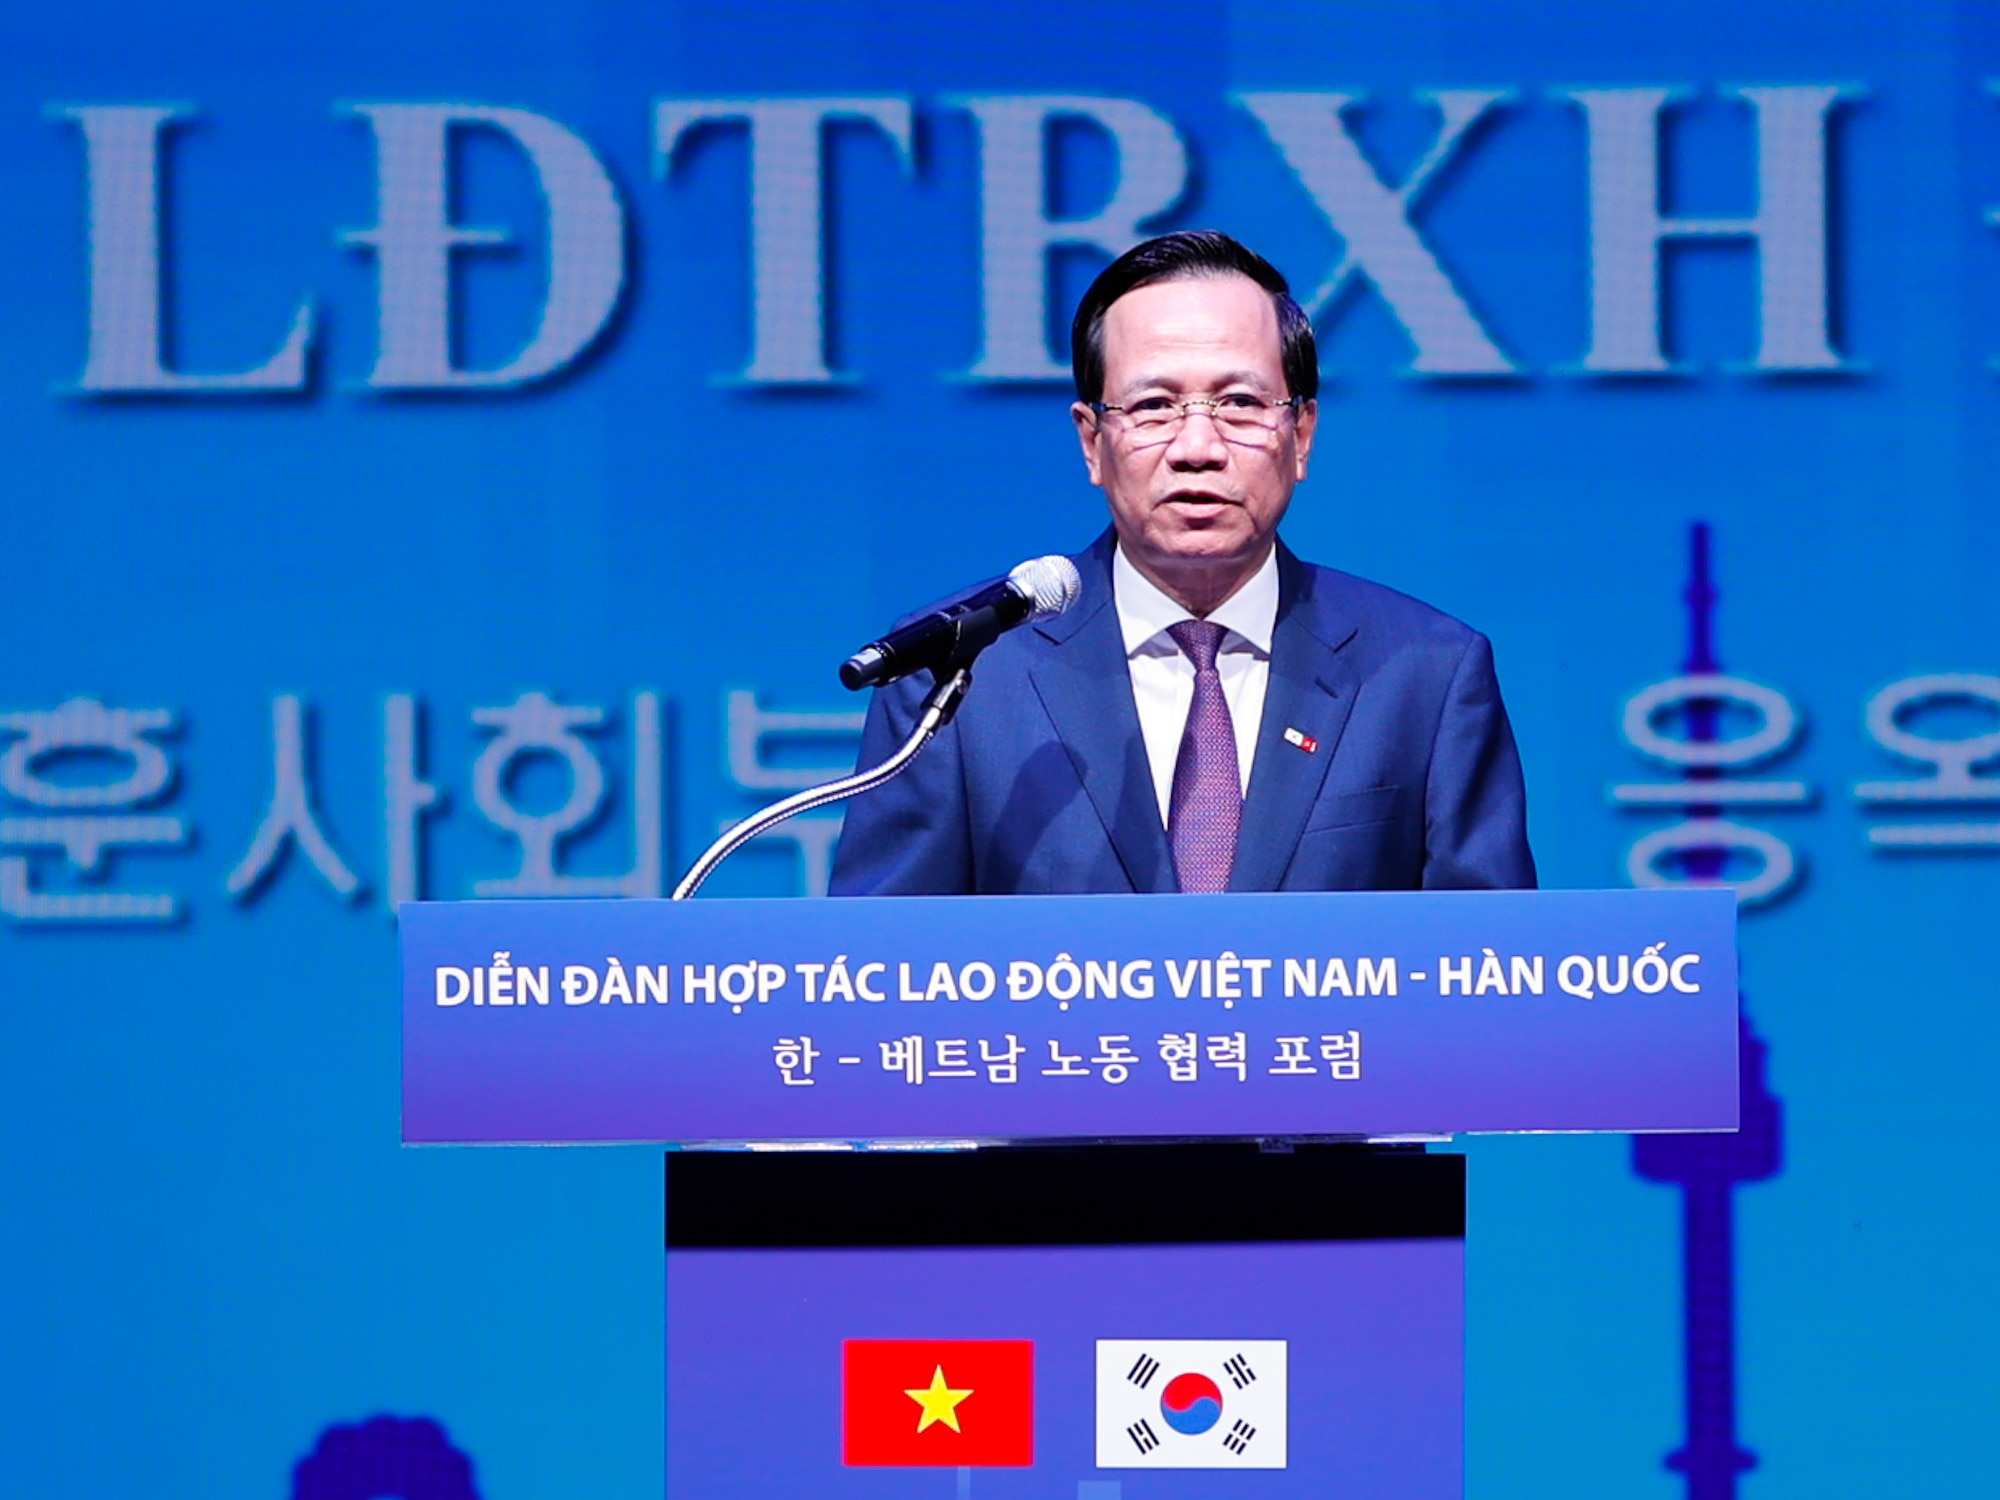 Tiêu điểm - Thủ tướng: Nâng tầm hợp tác lao động Việt Nam - Hàn Quốc